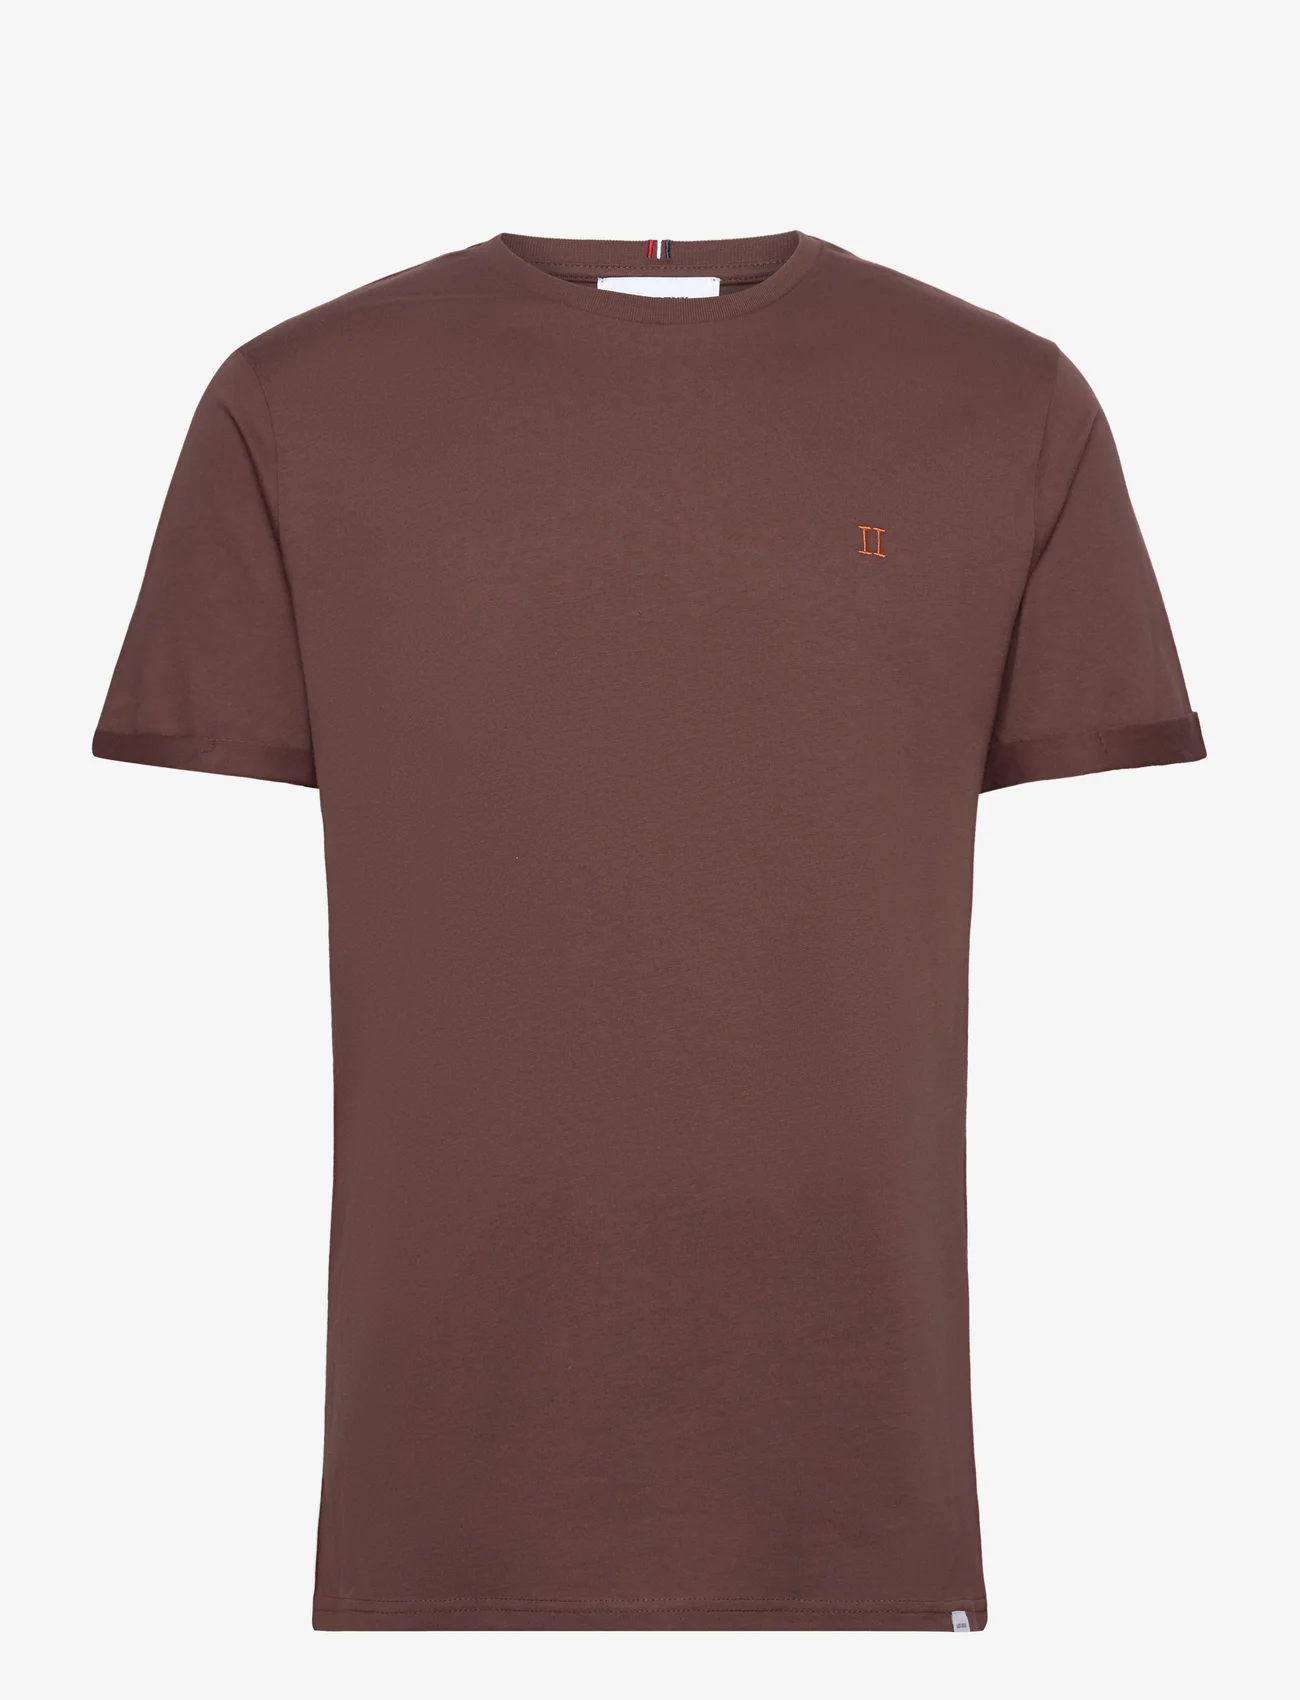 Les Deux - Nørregaard T-Shirt - Seasonal - najniższe ceny - ebony brown/orange - 0